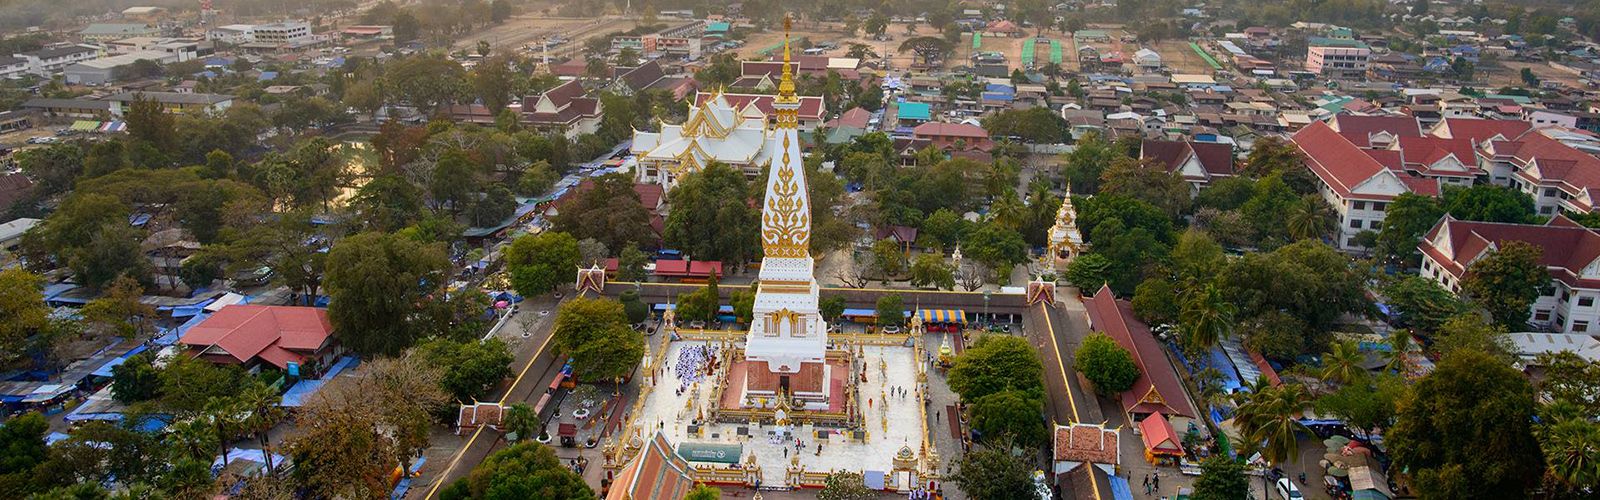 Nakhon Phanom Travel Guide | Asianventure Tours